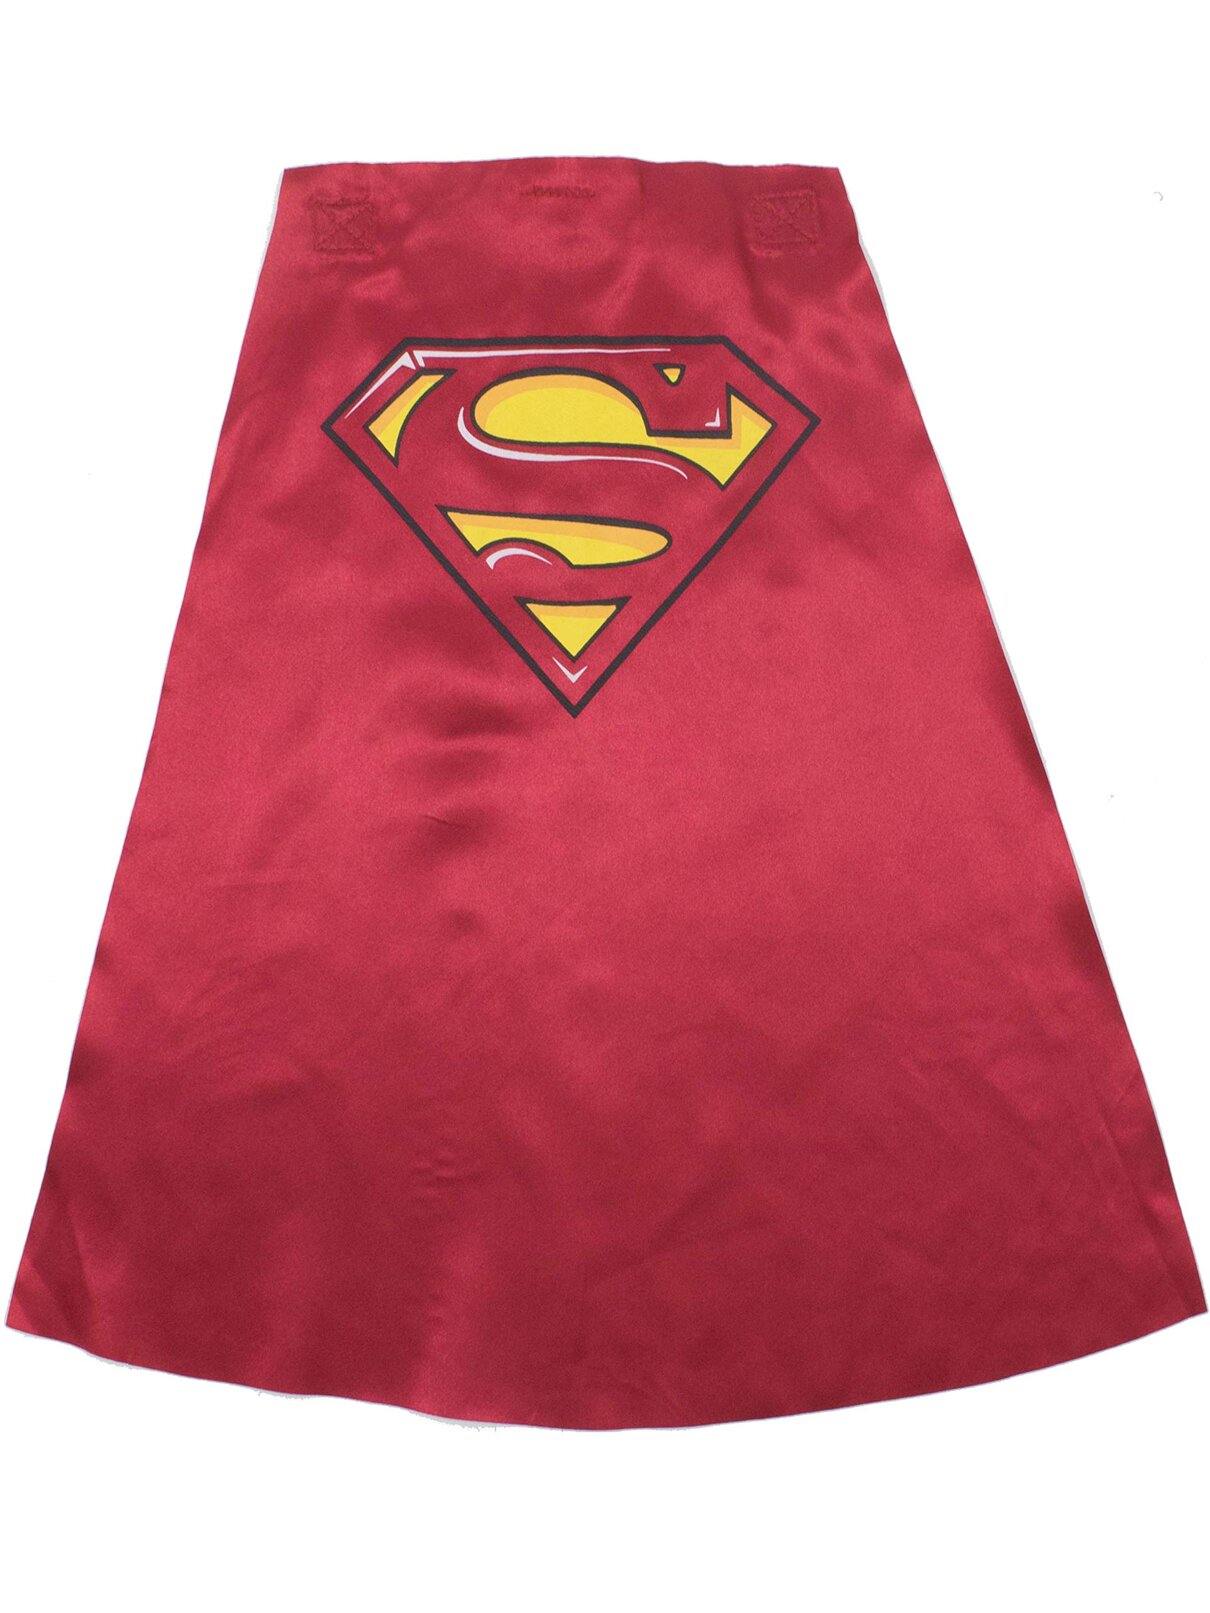 Superman Costume Caped Coverall & Cape Set